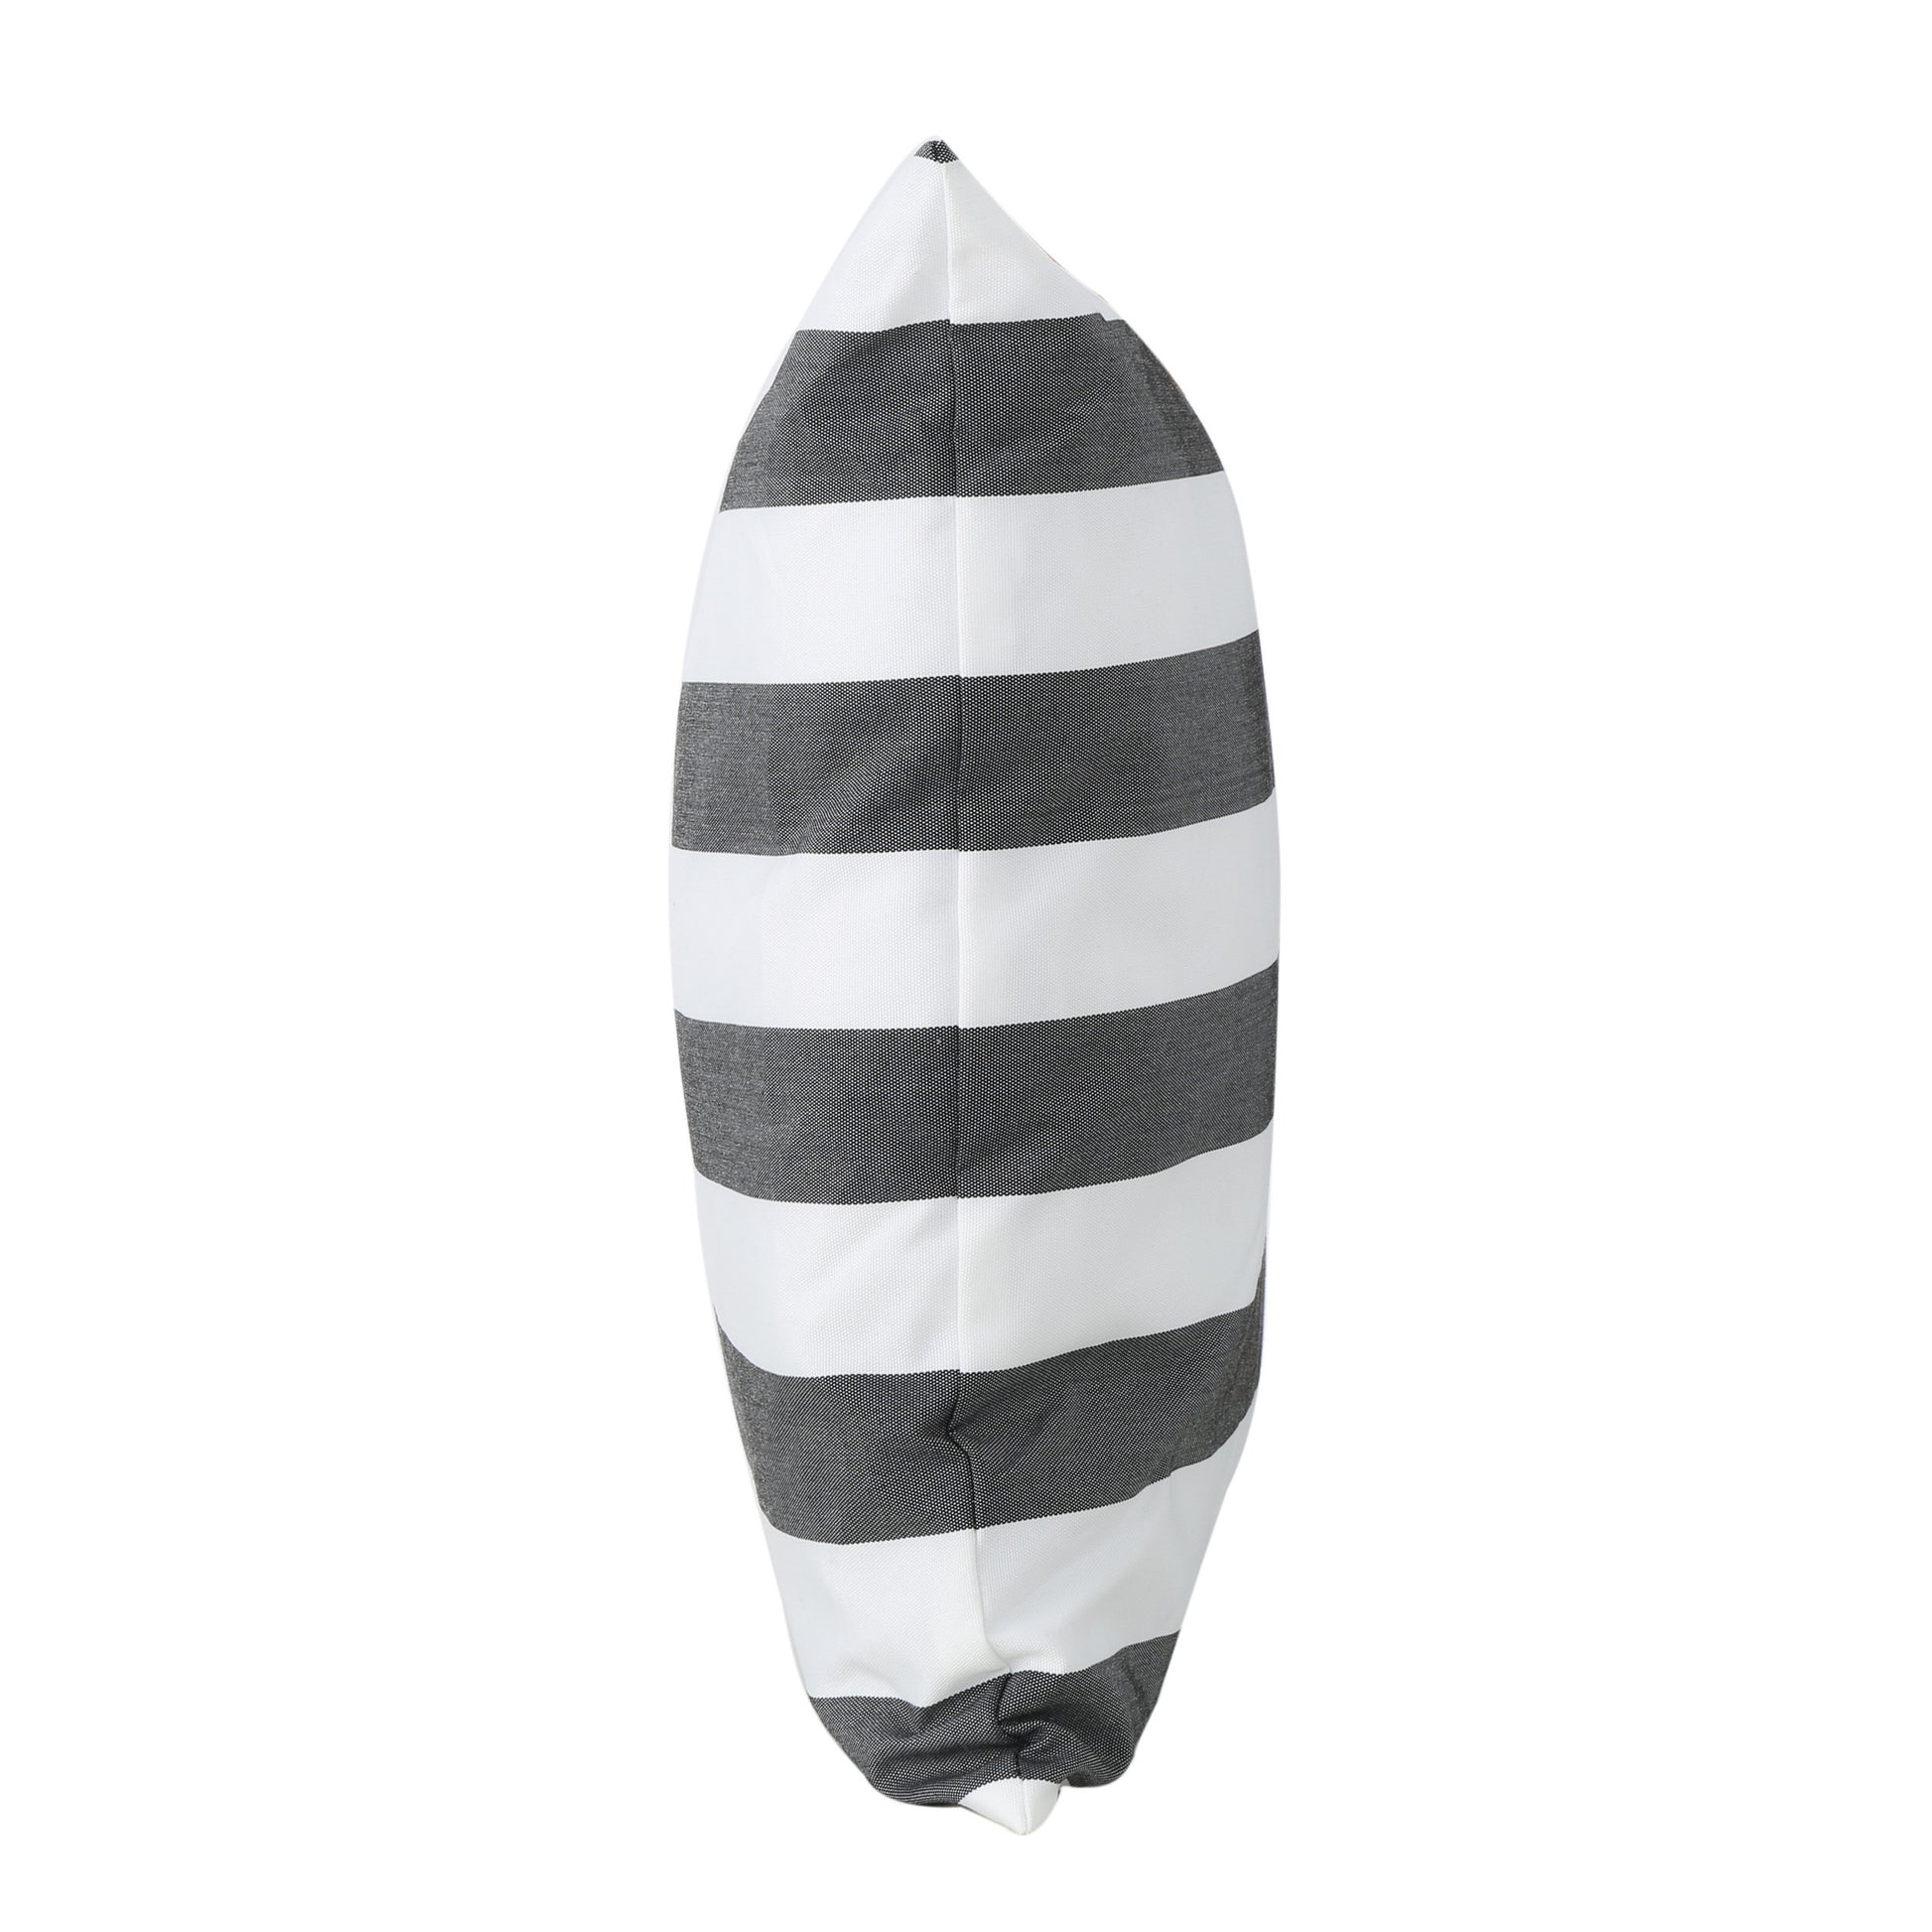 Coronado Stripe Square Pillow - Black Fabric